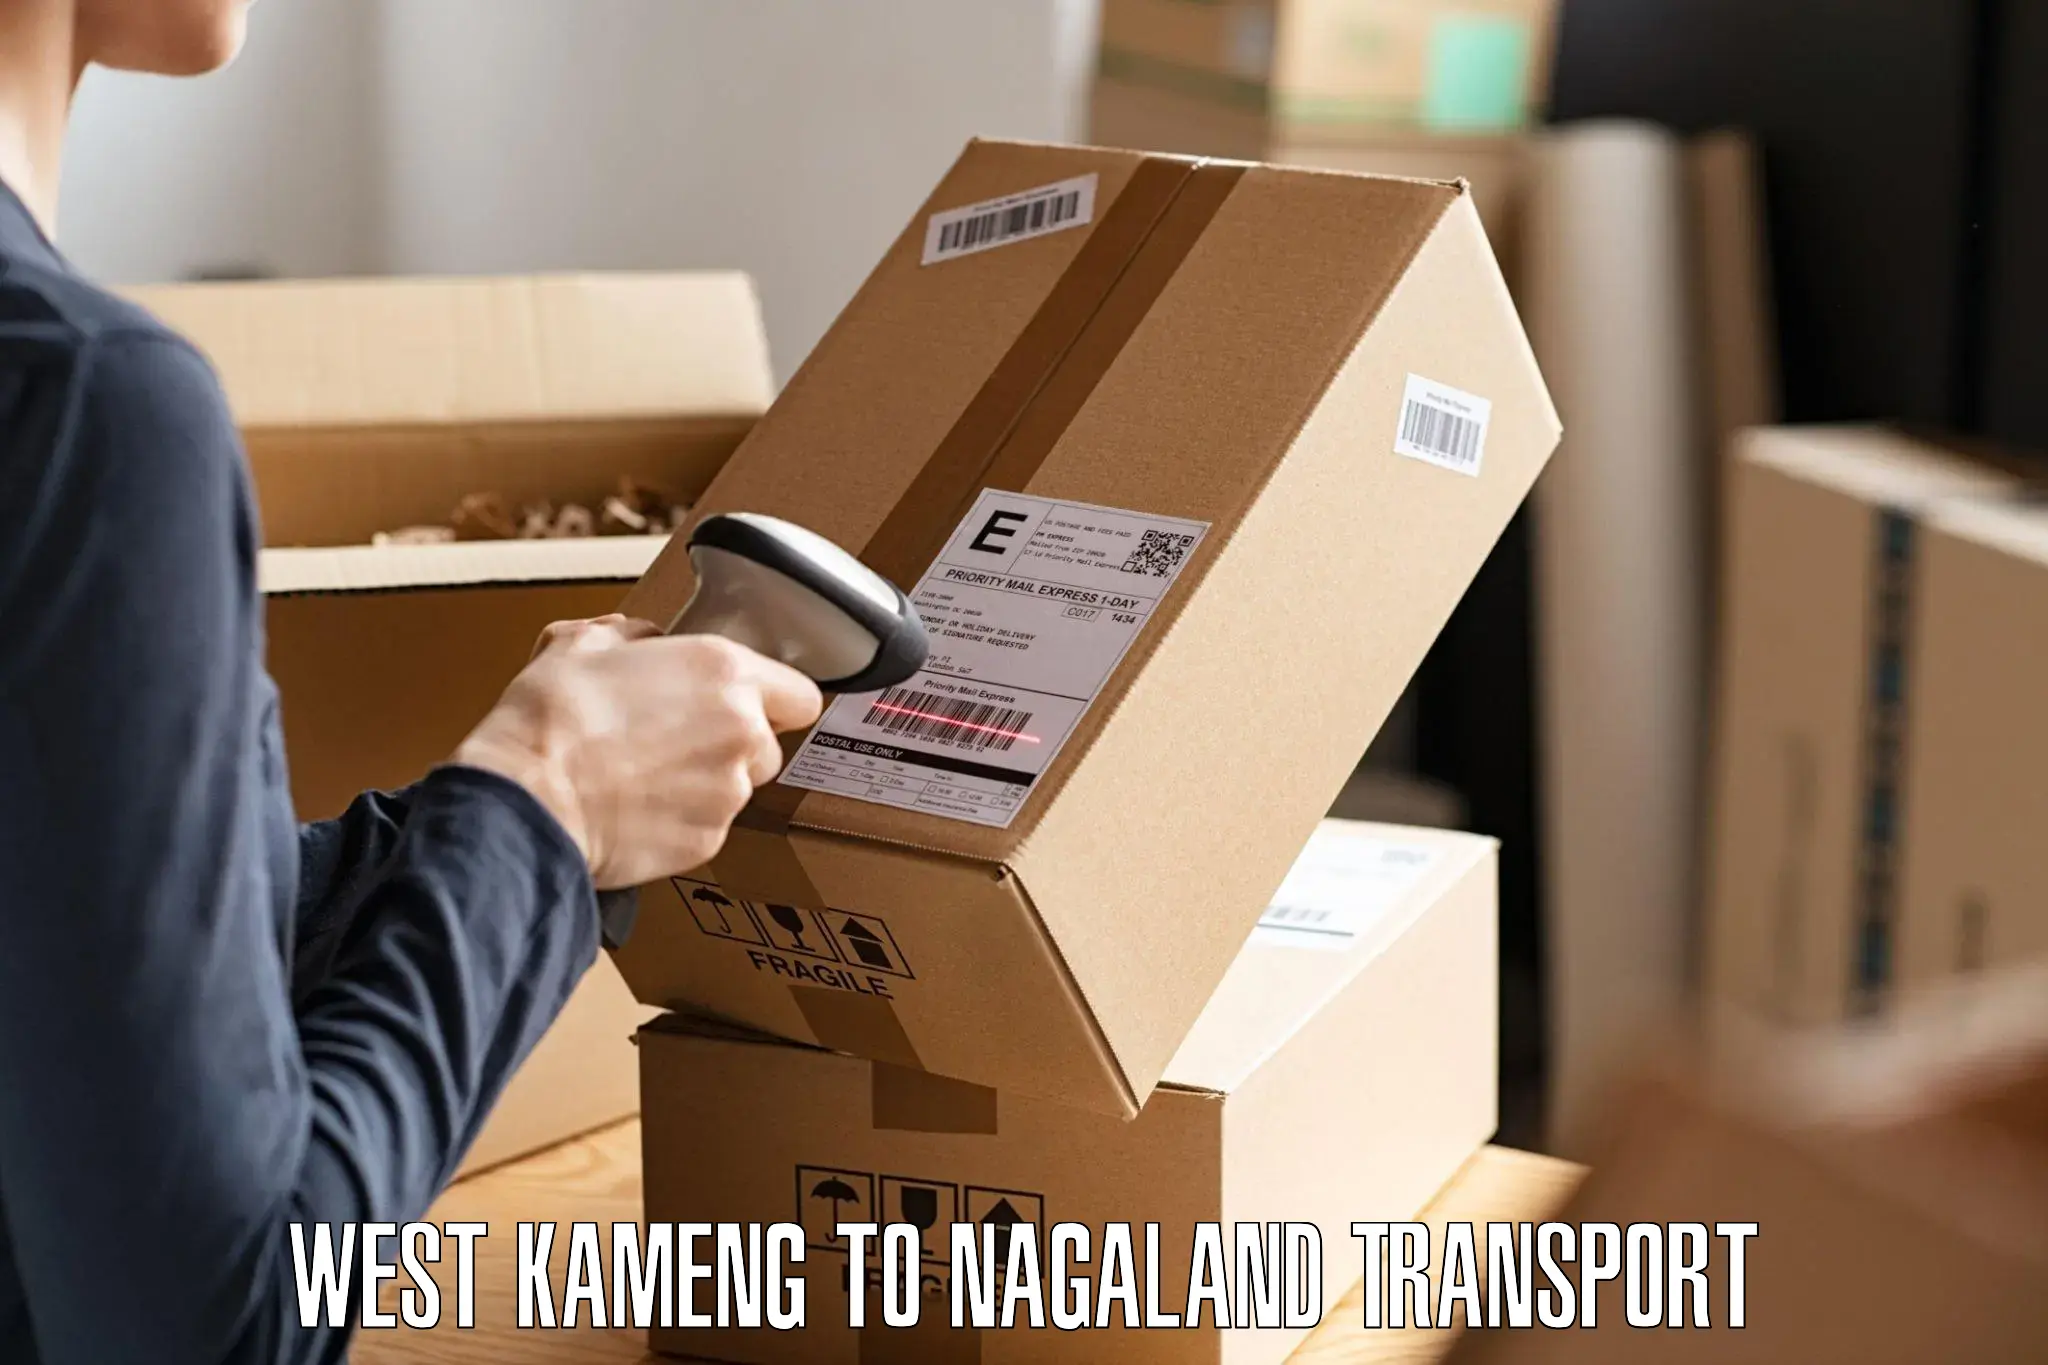 Land transport services West Kameng to Nagaland